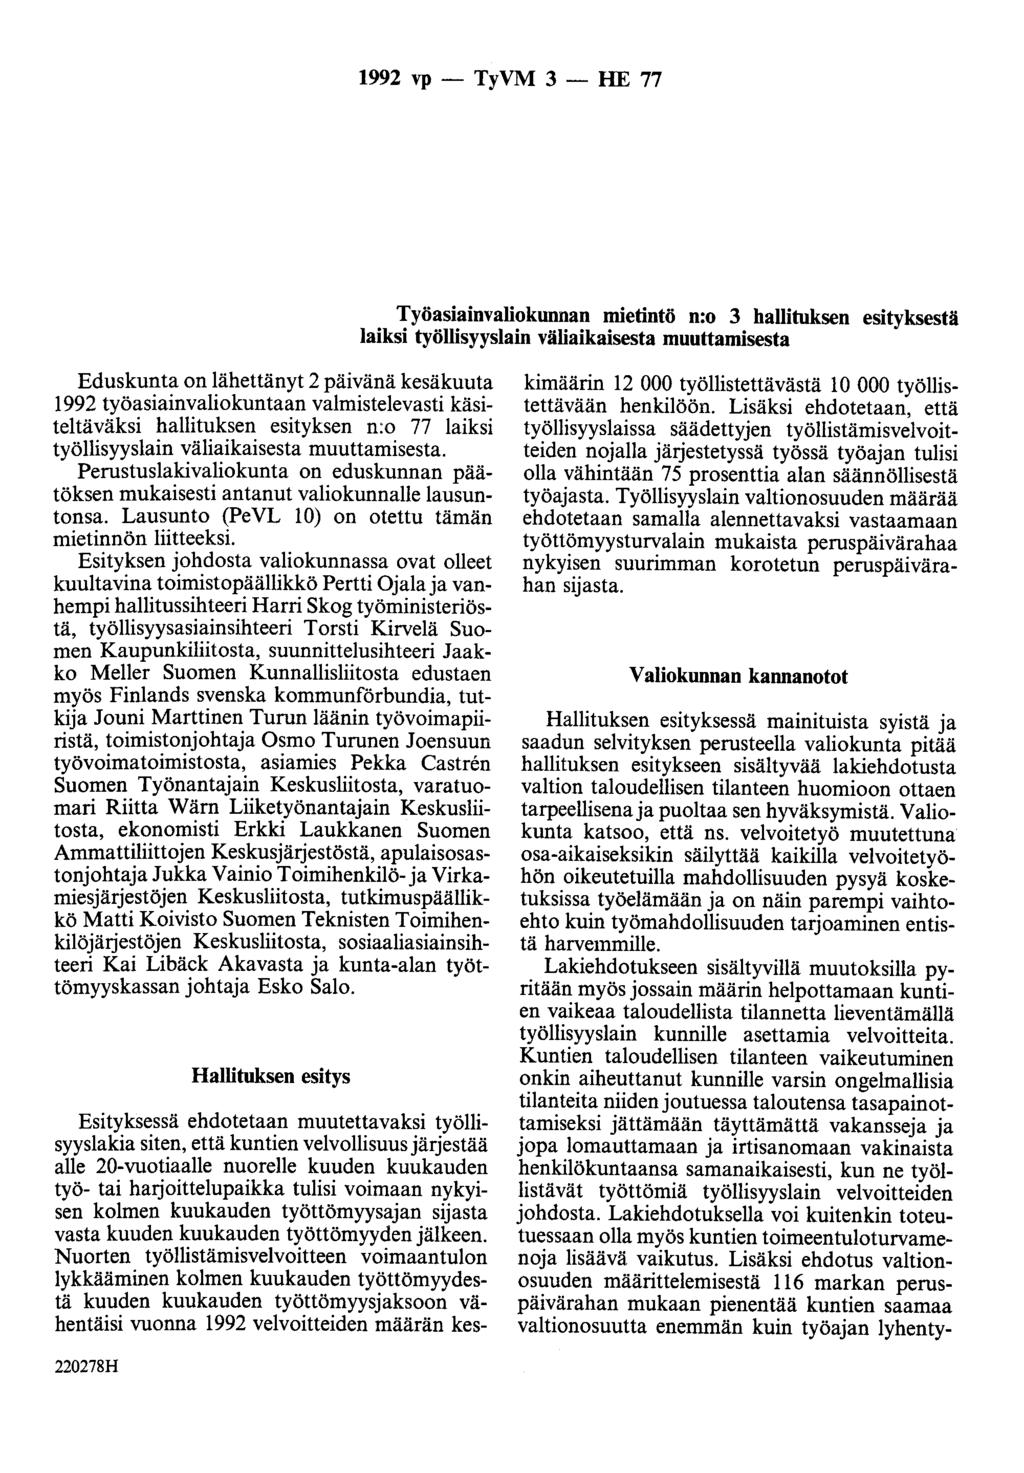 1992 vp - TyVM 3 - HE 77 Työasiainvaliokunnan mietintö n:o 3 hallituksen esityksestä laiksi työllisyyslain väliaikaisesta muuttamisesta Eduskunta on lähettänyt 2 päivänä kesäkuuta 1992